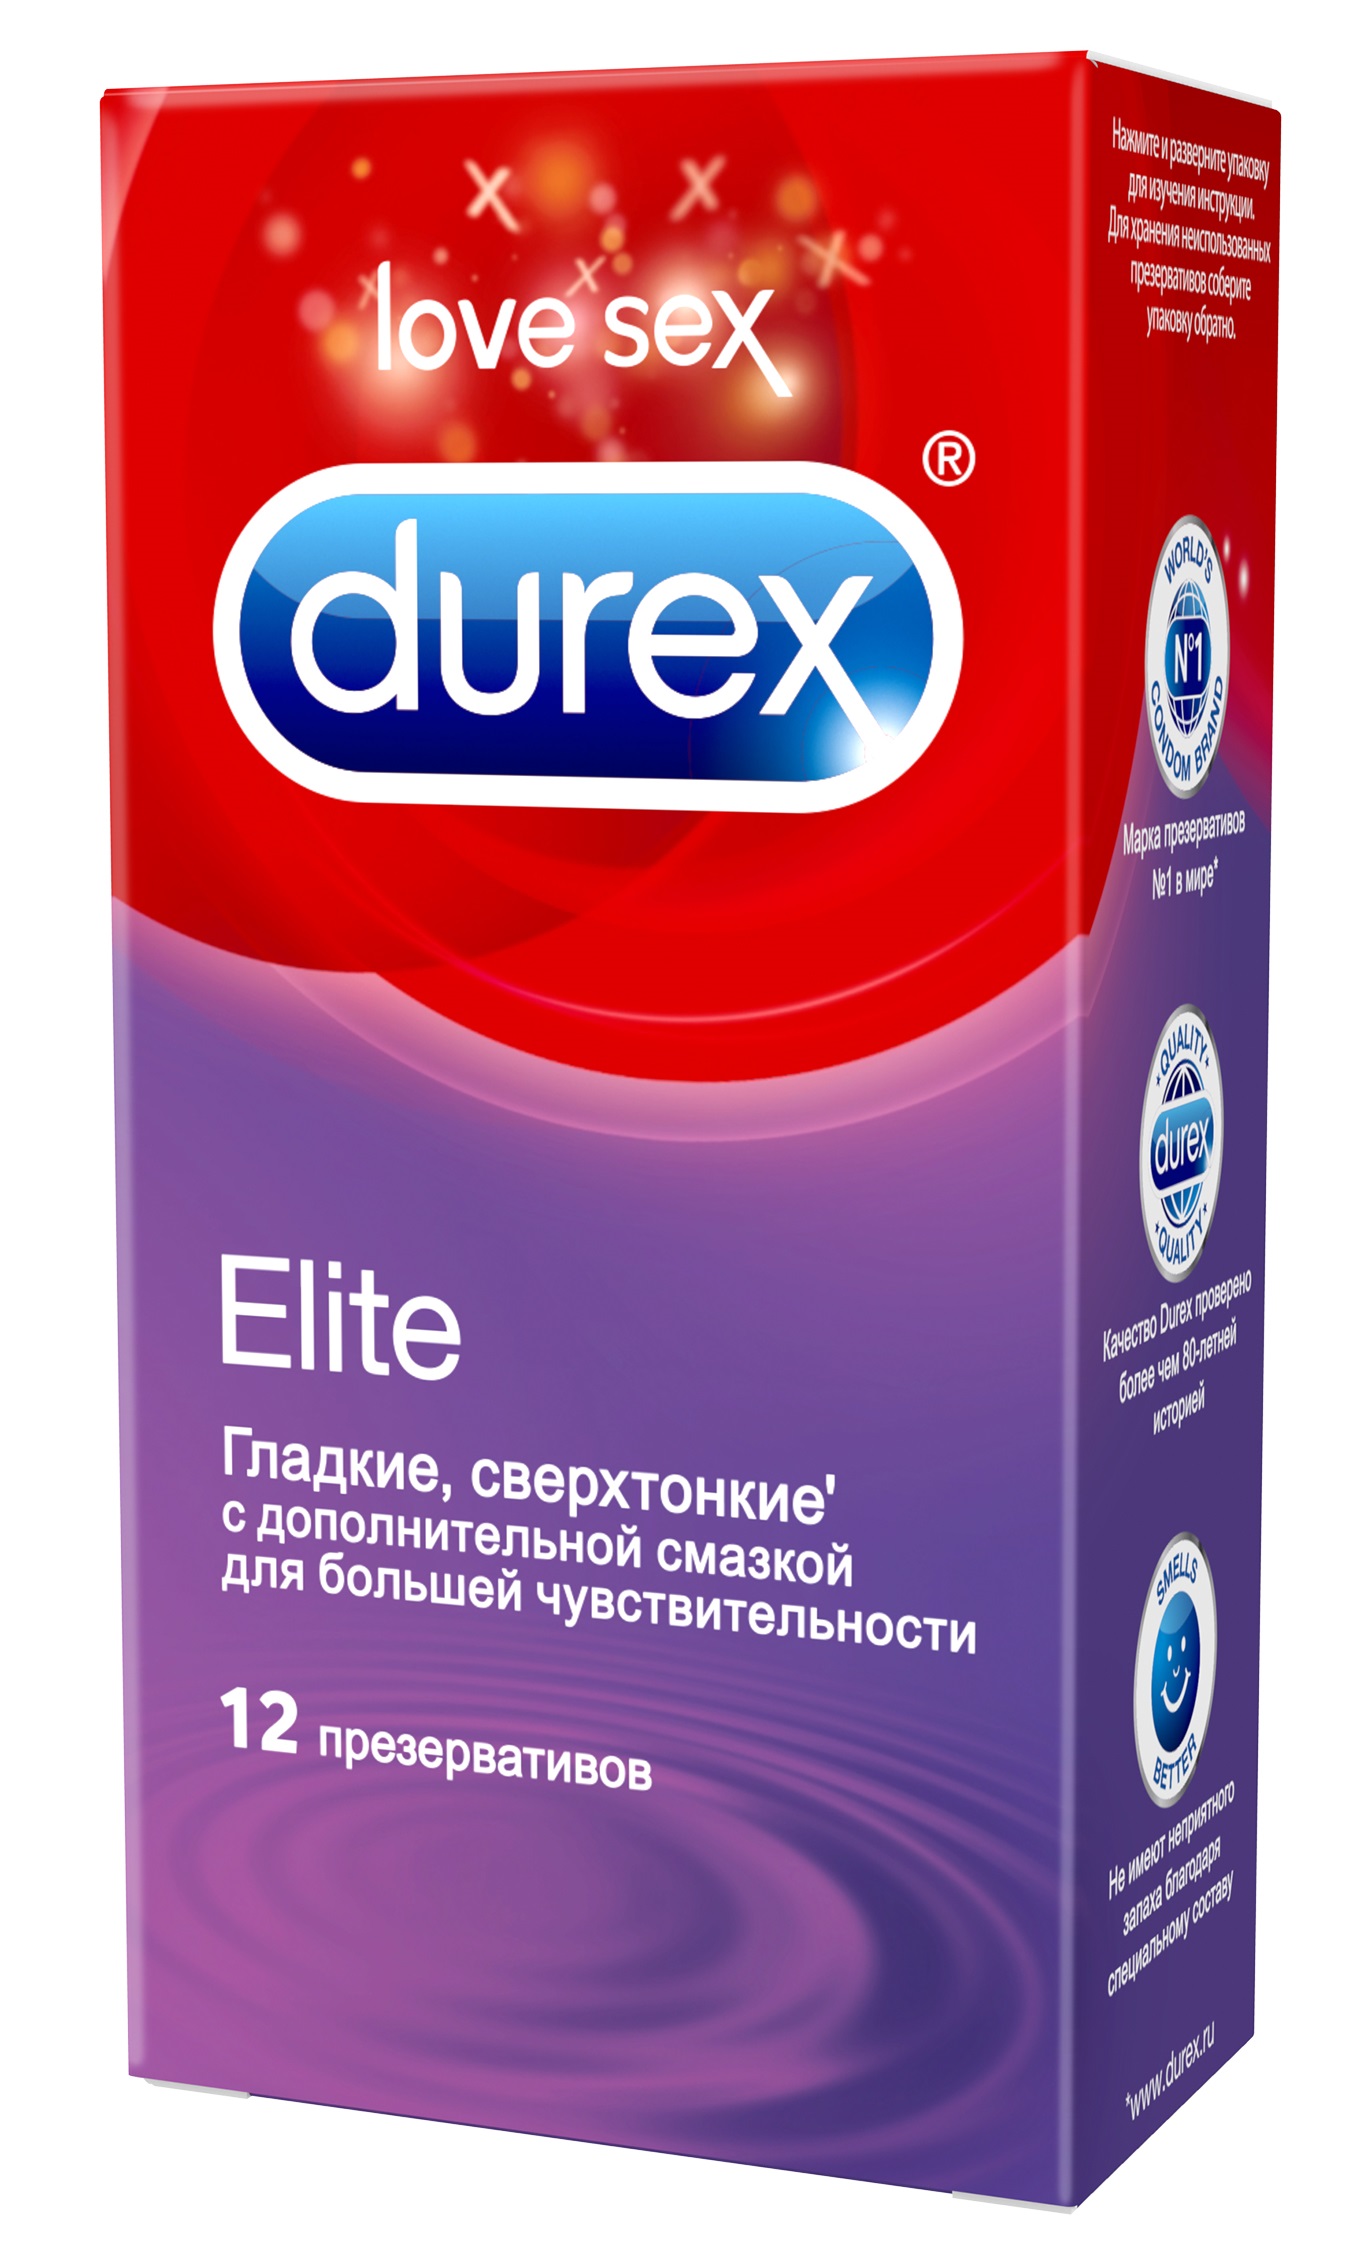 Durex Elite Сверхтонкие презервативы с дополнительной смазкой для большей чувствительности, 12 шт